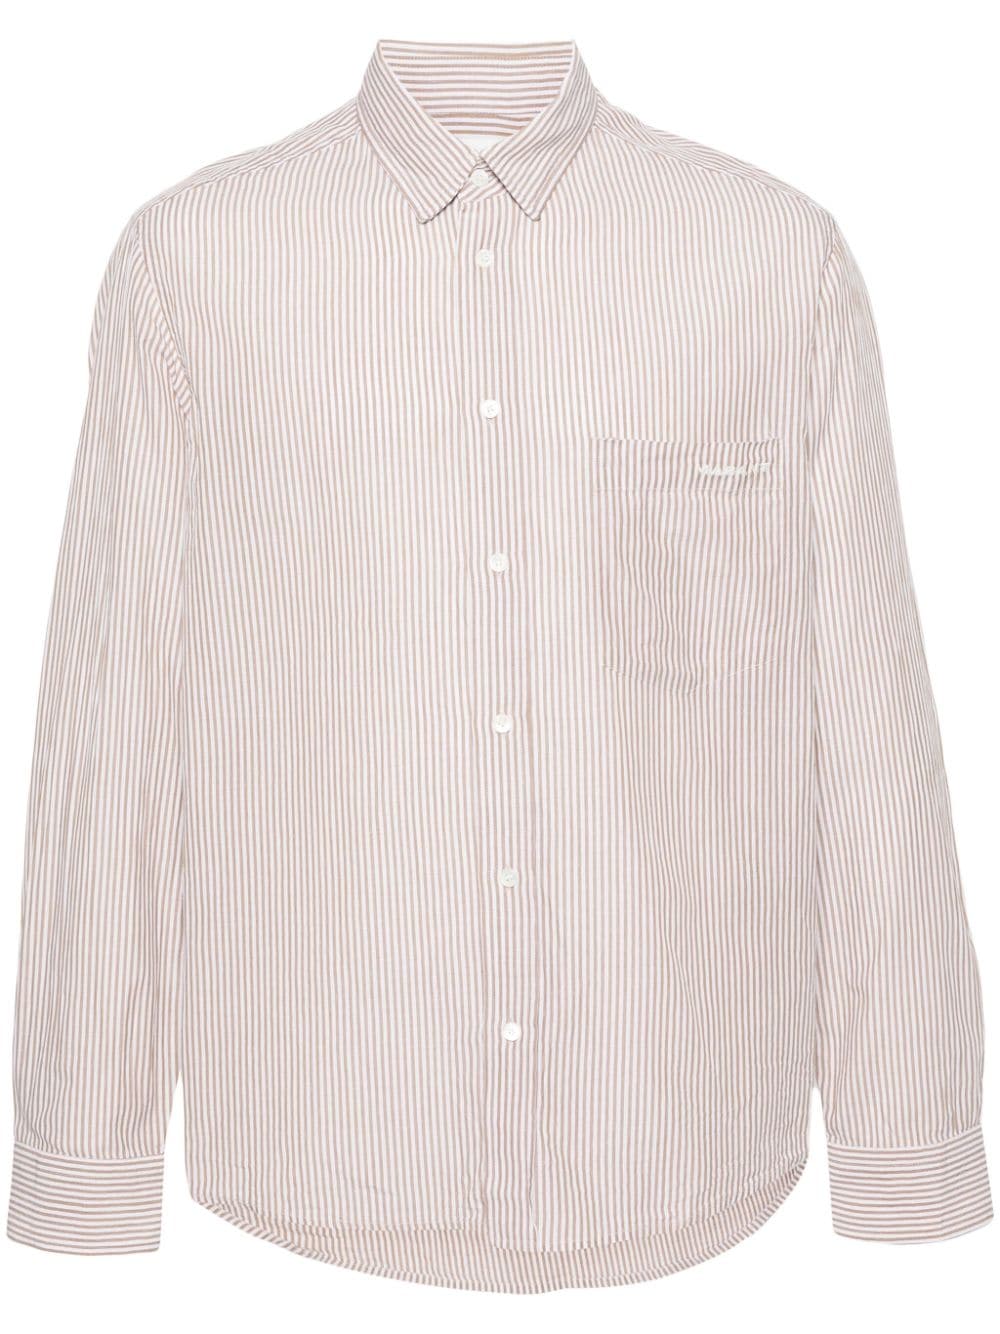 MARANT Jasolo striped cotton shirt - Neutrals von MARANT